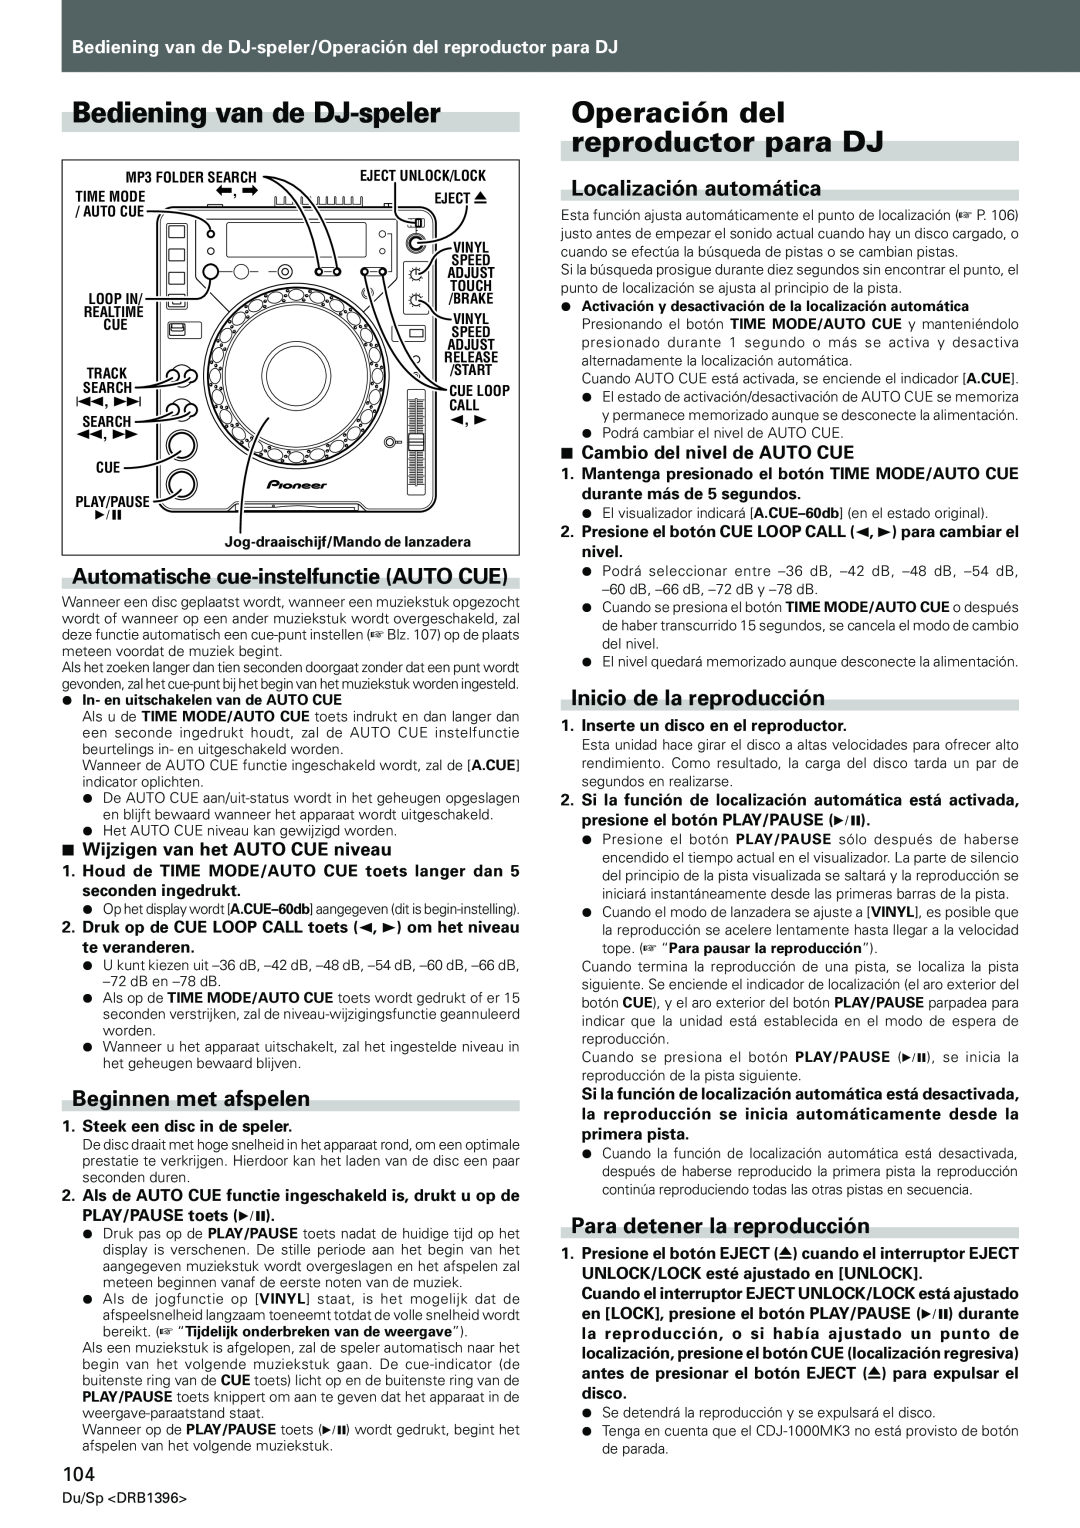 Pioneer CDJ-1000MK3 Bediening van de DJ-speler, Operación del reproductor para DJ, Automatische cue-instelfunctieAUTO CUE 